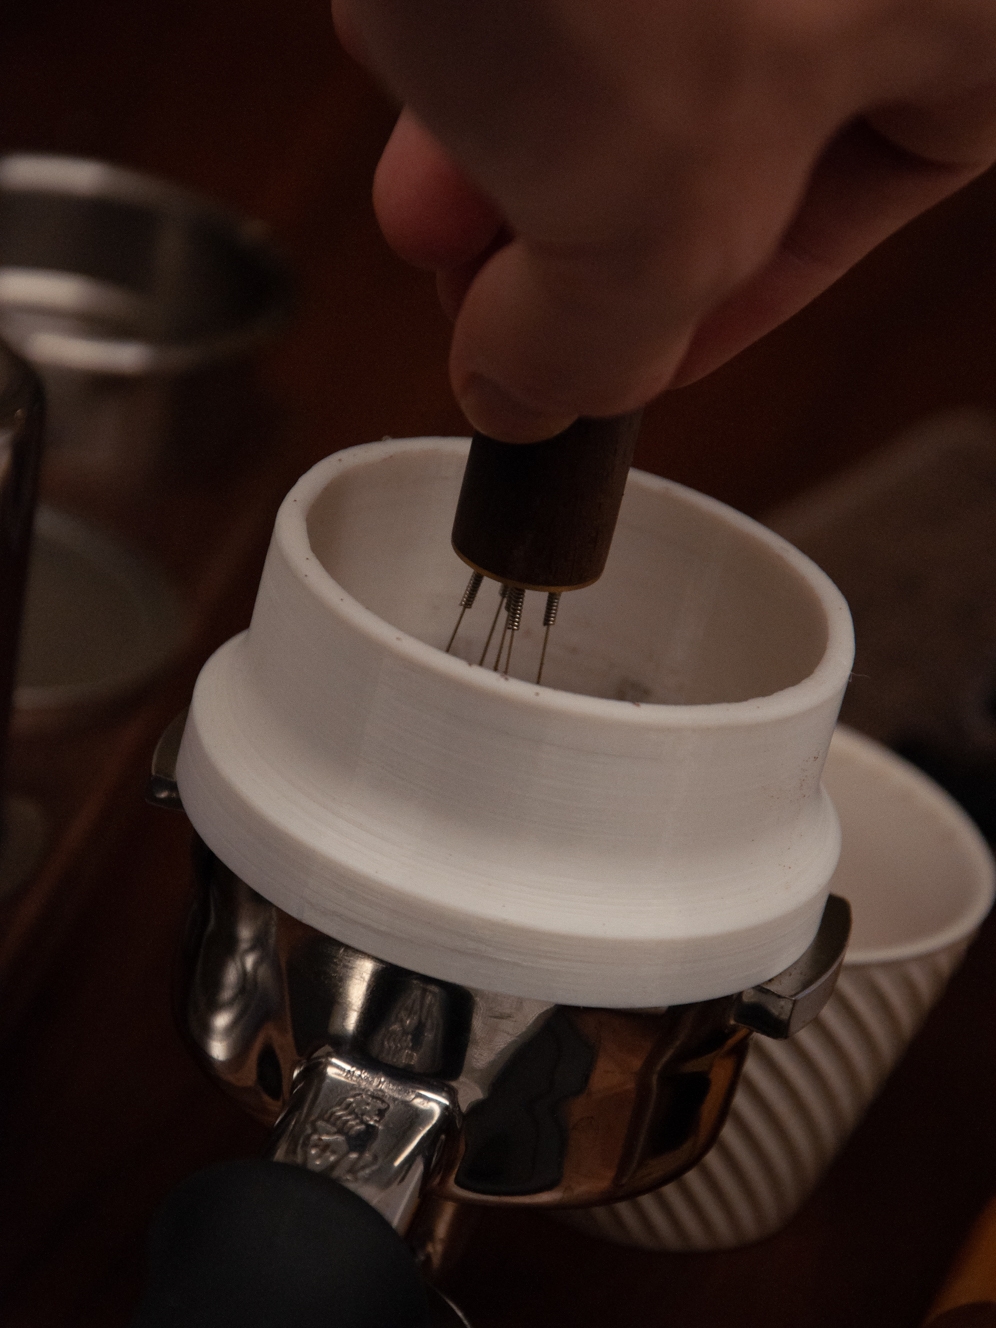 意式咖啡 3d打印 粉環外卡 簡約純色 配件類型 其他